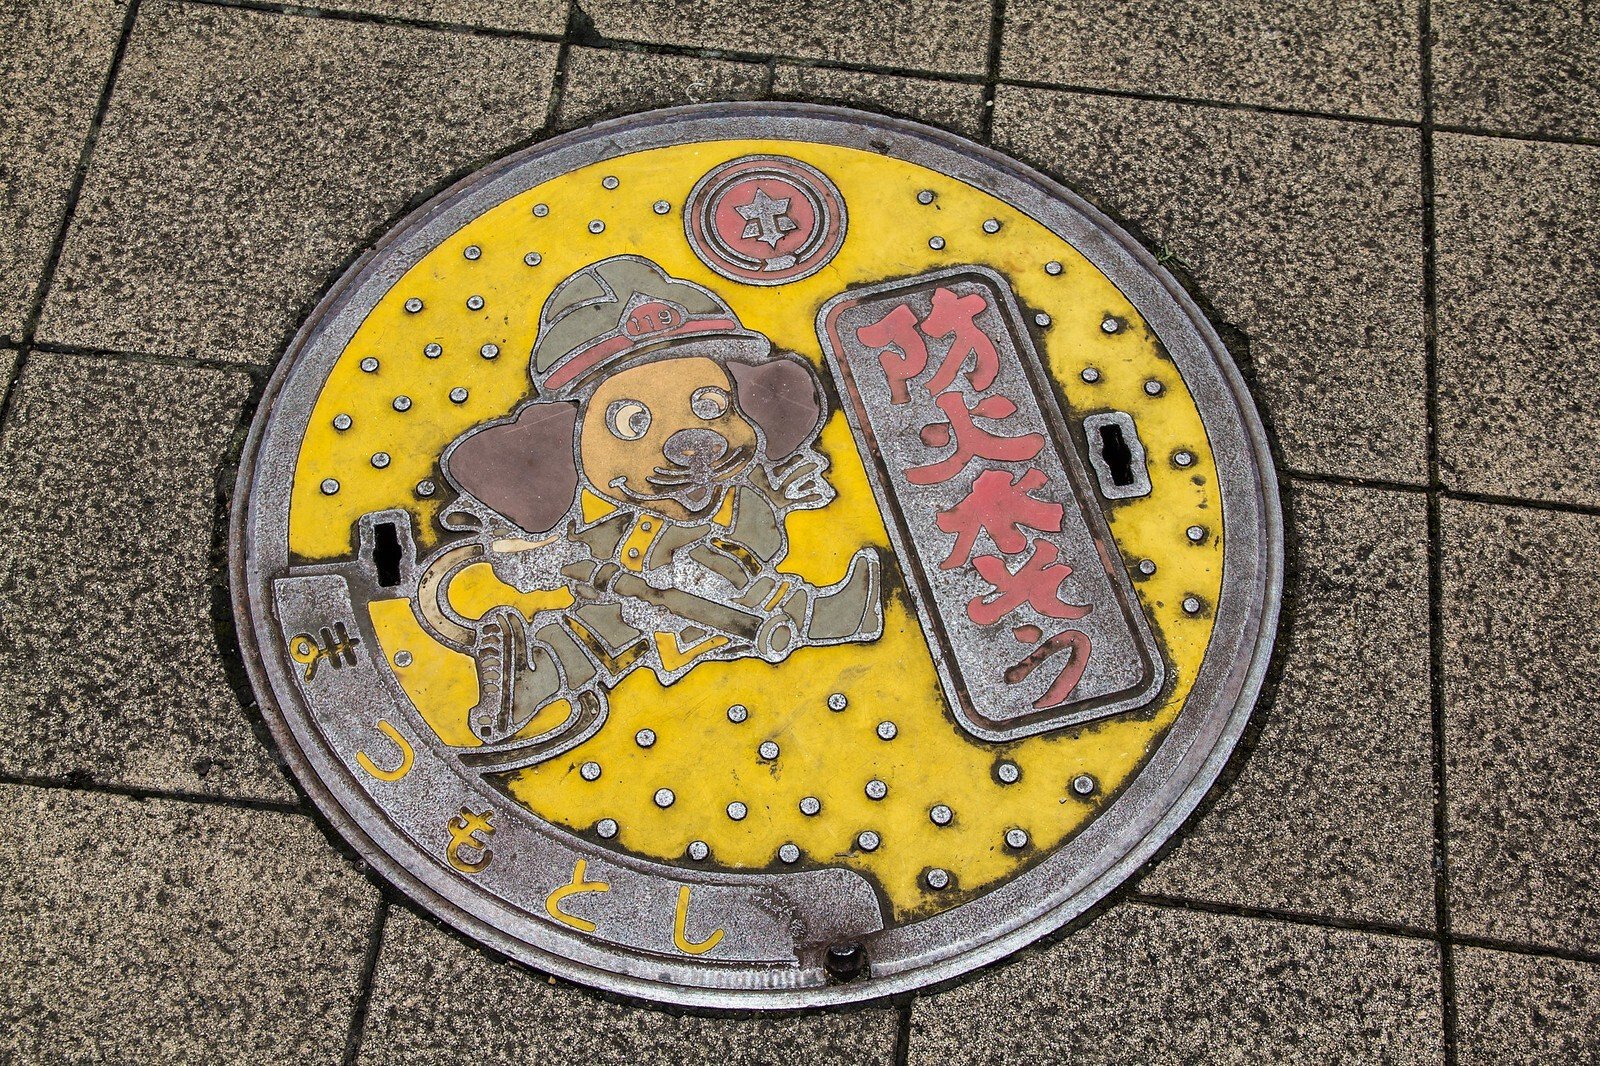 Яркие особенности оформления канализационных люков в Японии архитектура,где и как,городская среда,кто